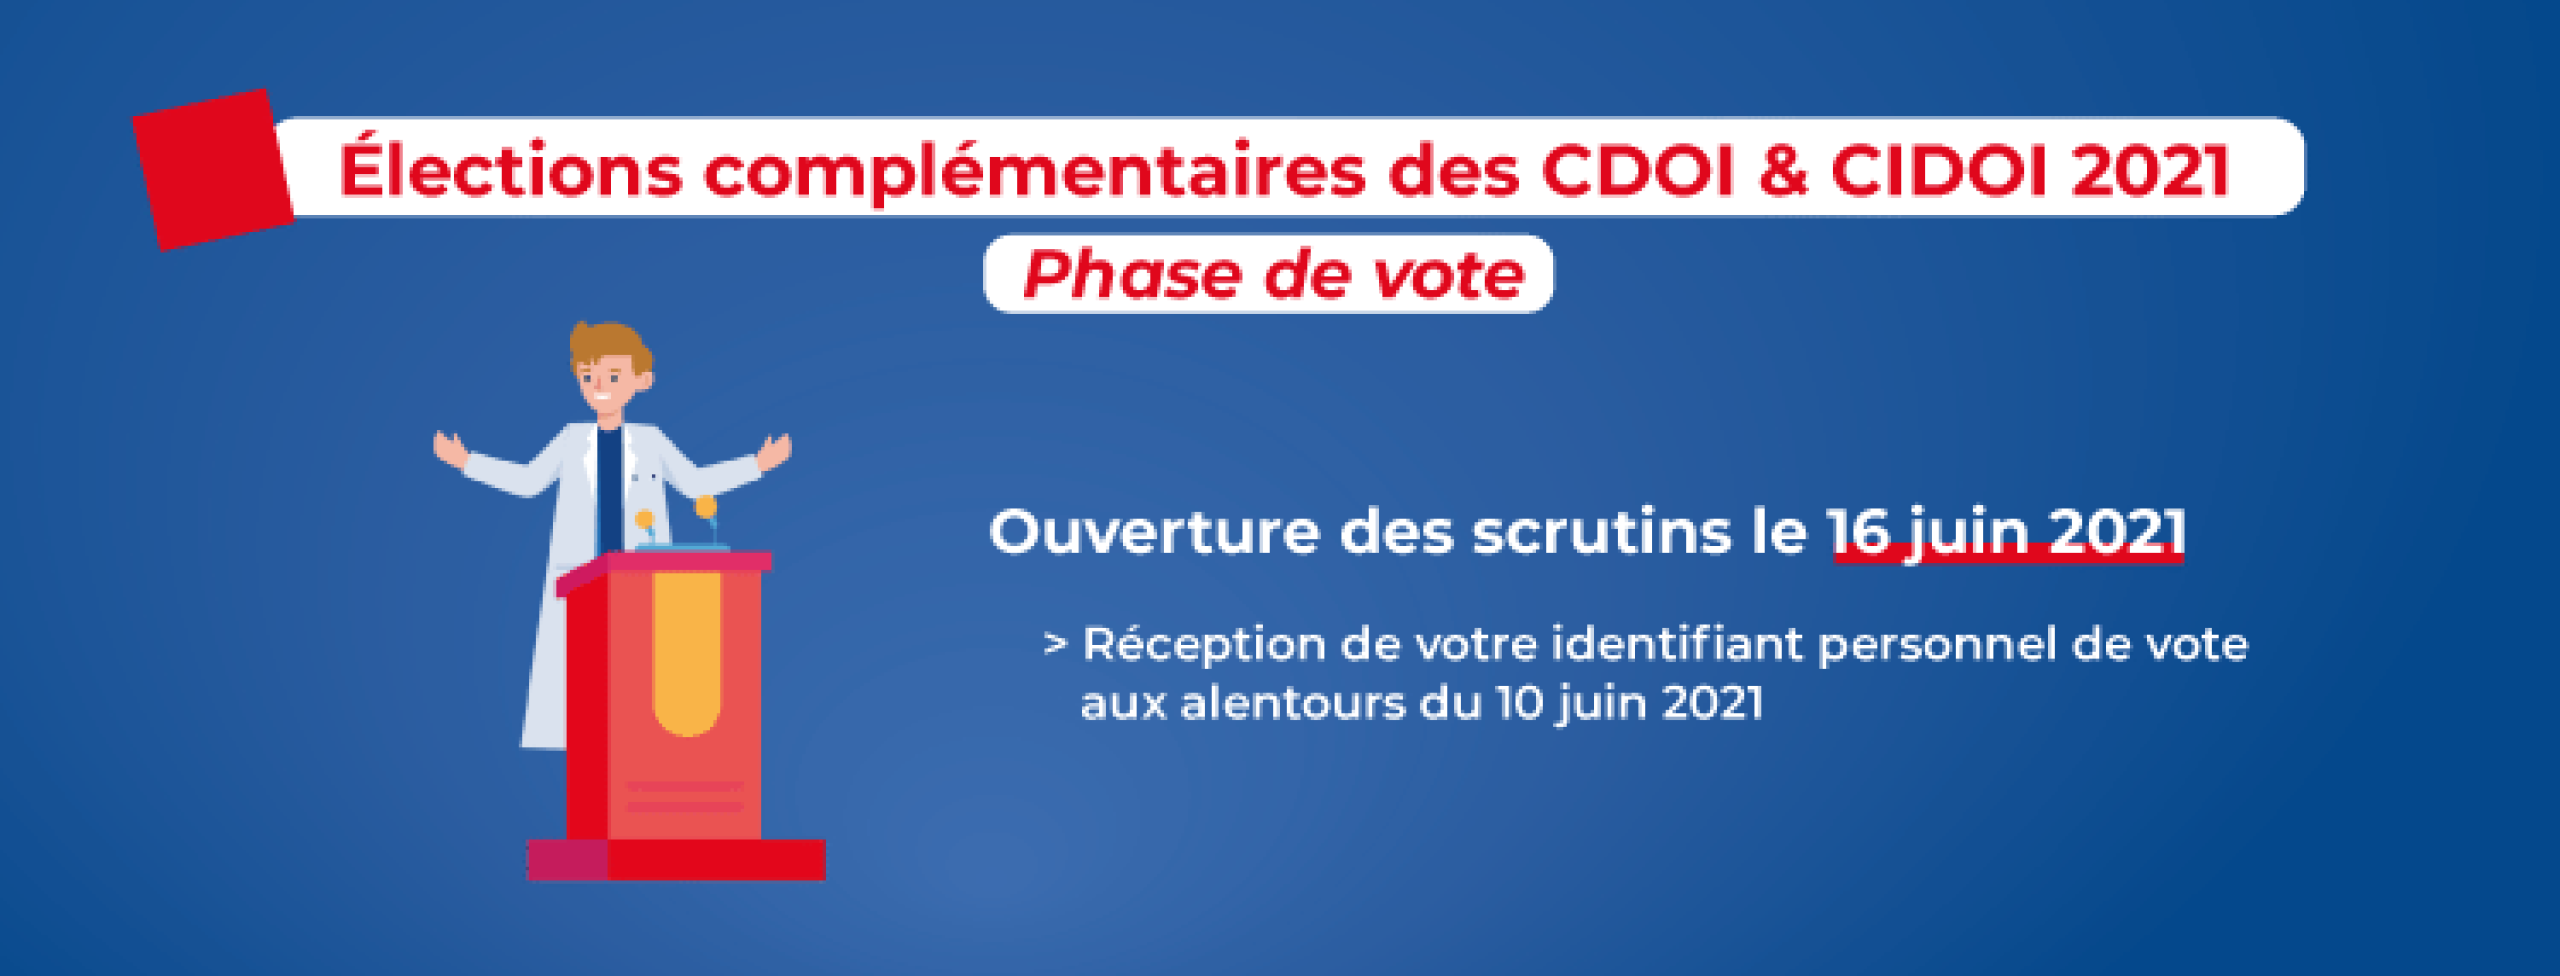 Elections complémentaires des CDOI/CIDOI 2021 : Ouverture des scrutins le 16 juin